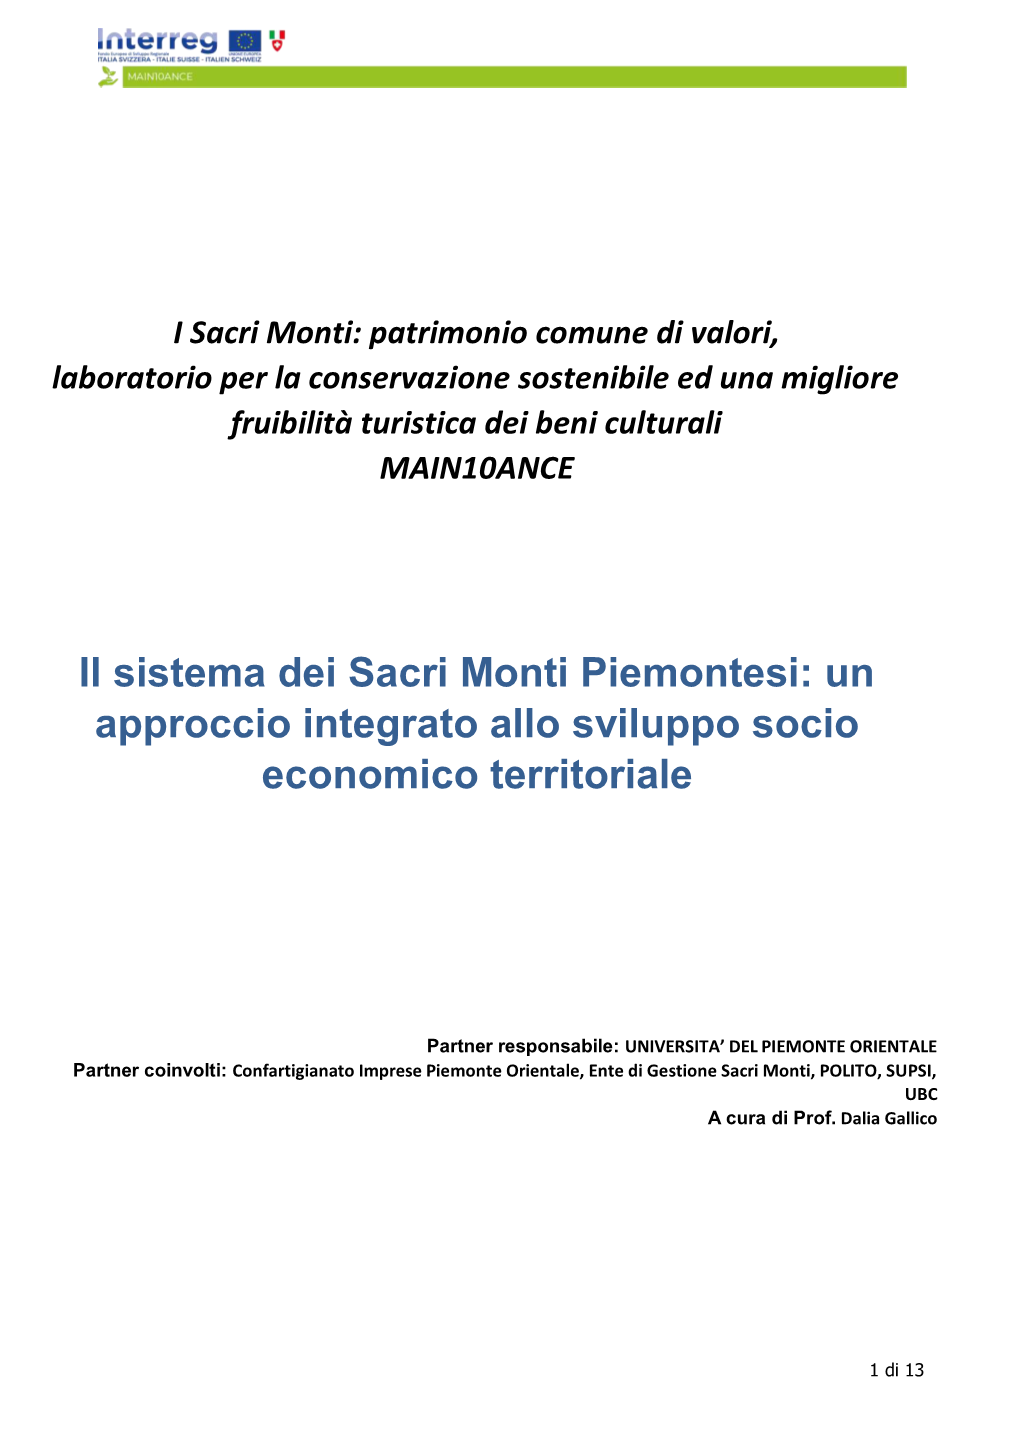 Il Sistema Dei Sacri Monti Piemontesi: Un Approccio Integrato Allo Sviluppo Socio Economico Territoriale